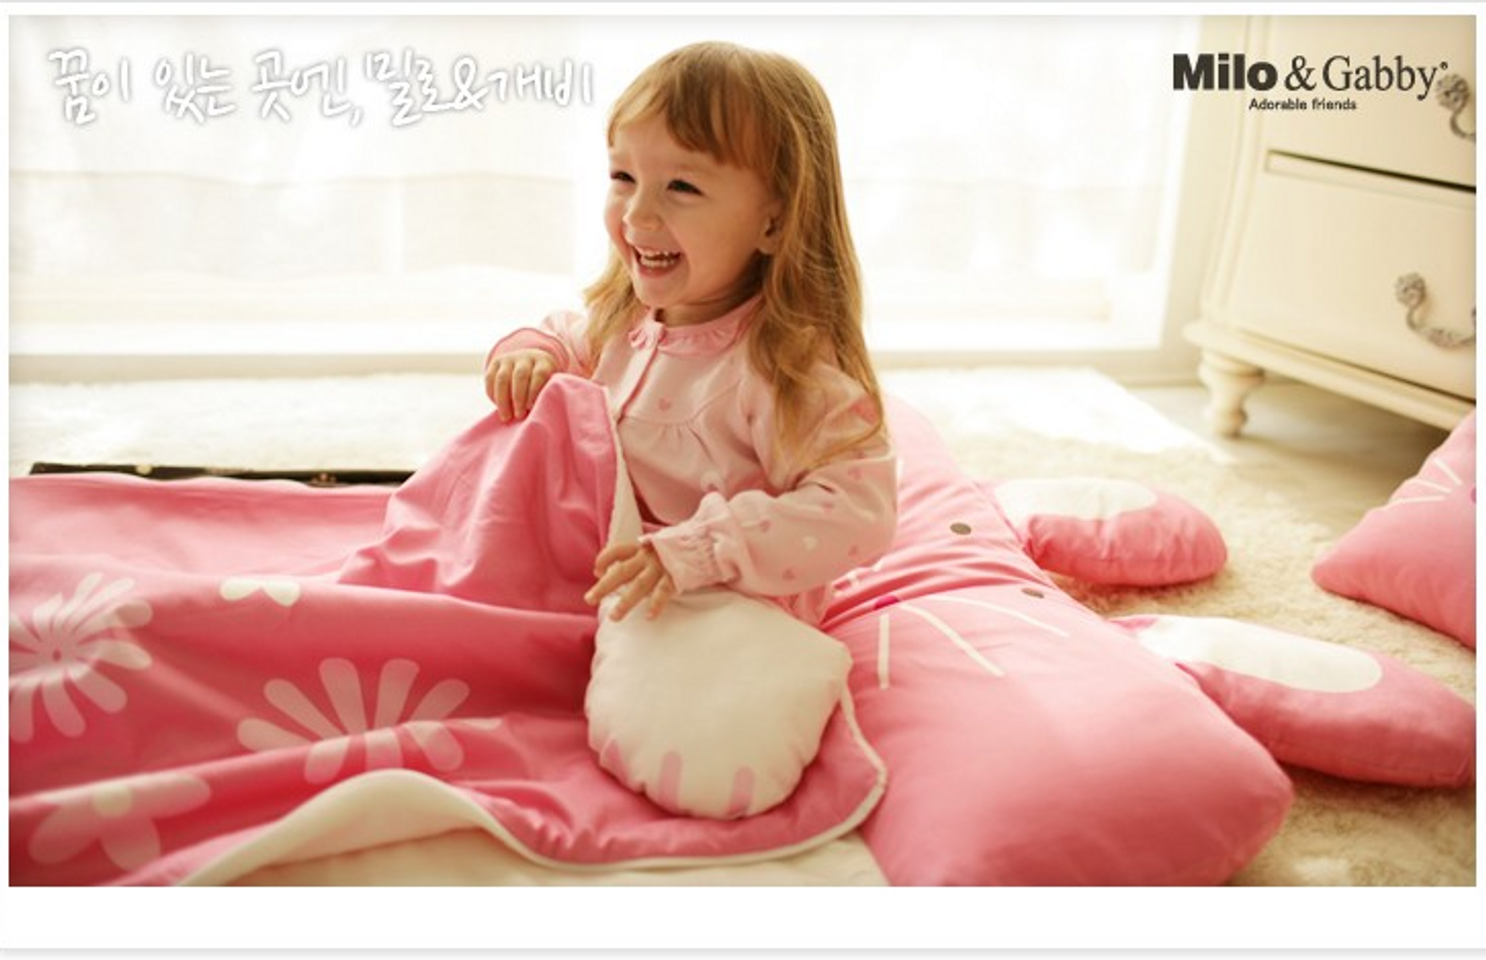 Túi ngủ Milo Gaby là sản phẩm dành cho bé rất được ưa chuộng tại Hàn Quốc hiện nay